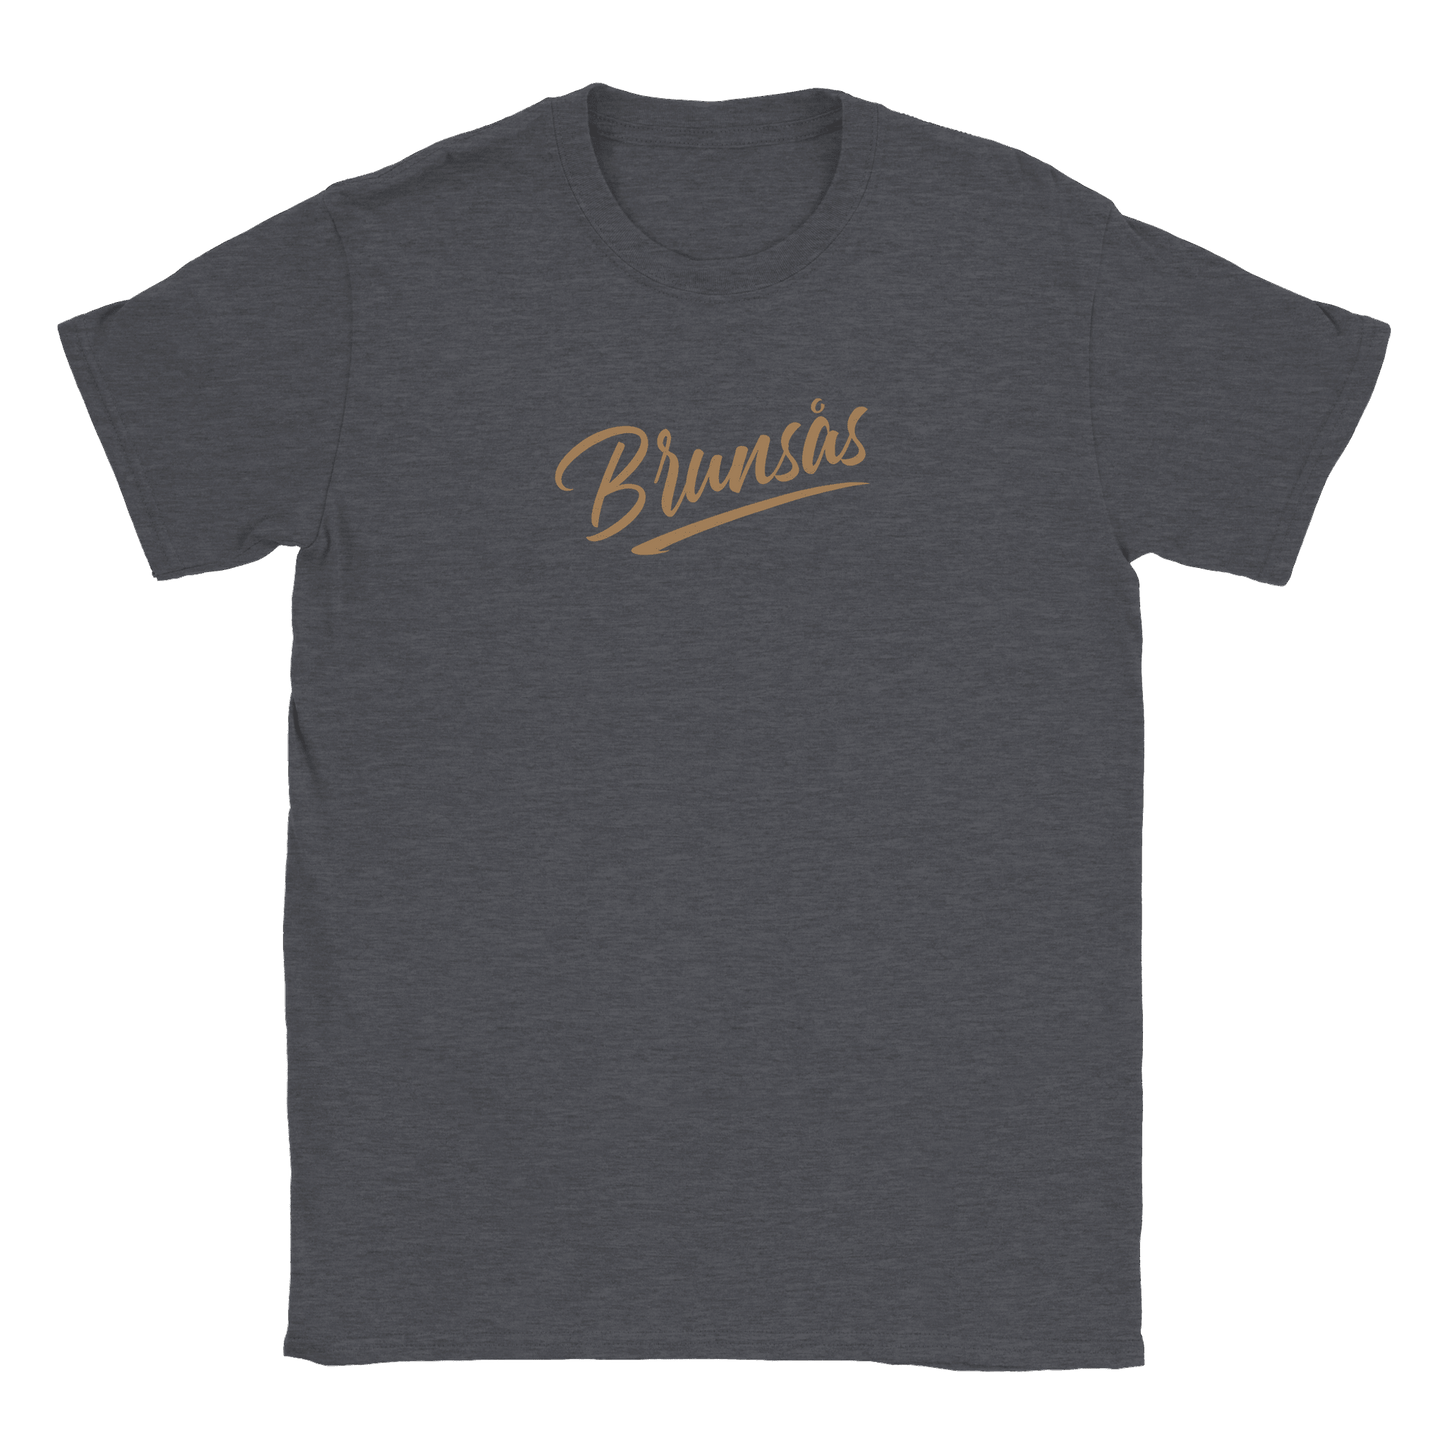 Brunsås - T-shirt Mörk Ljung